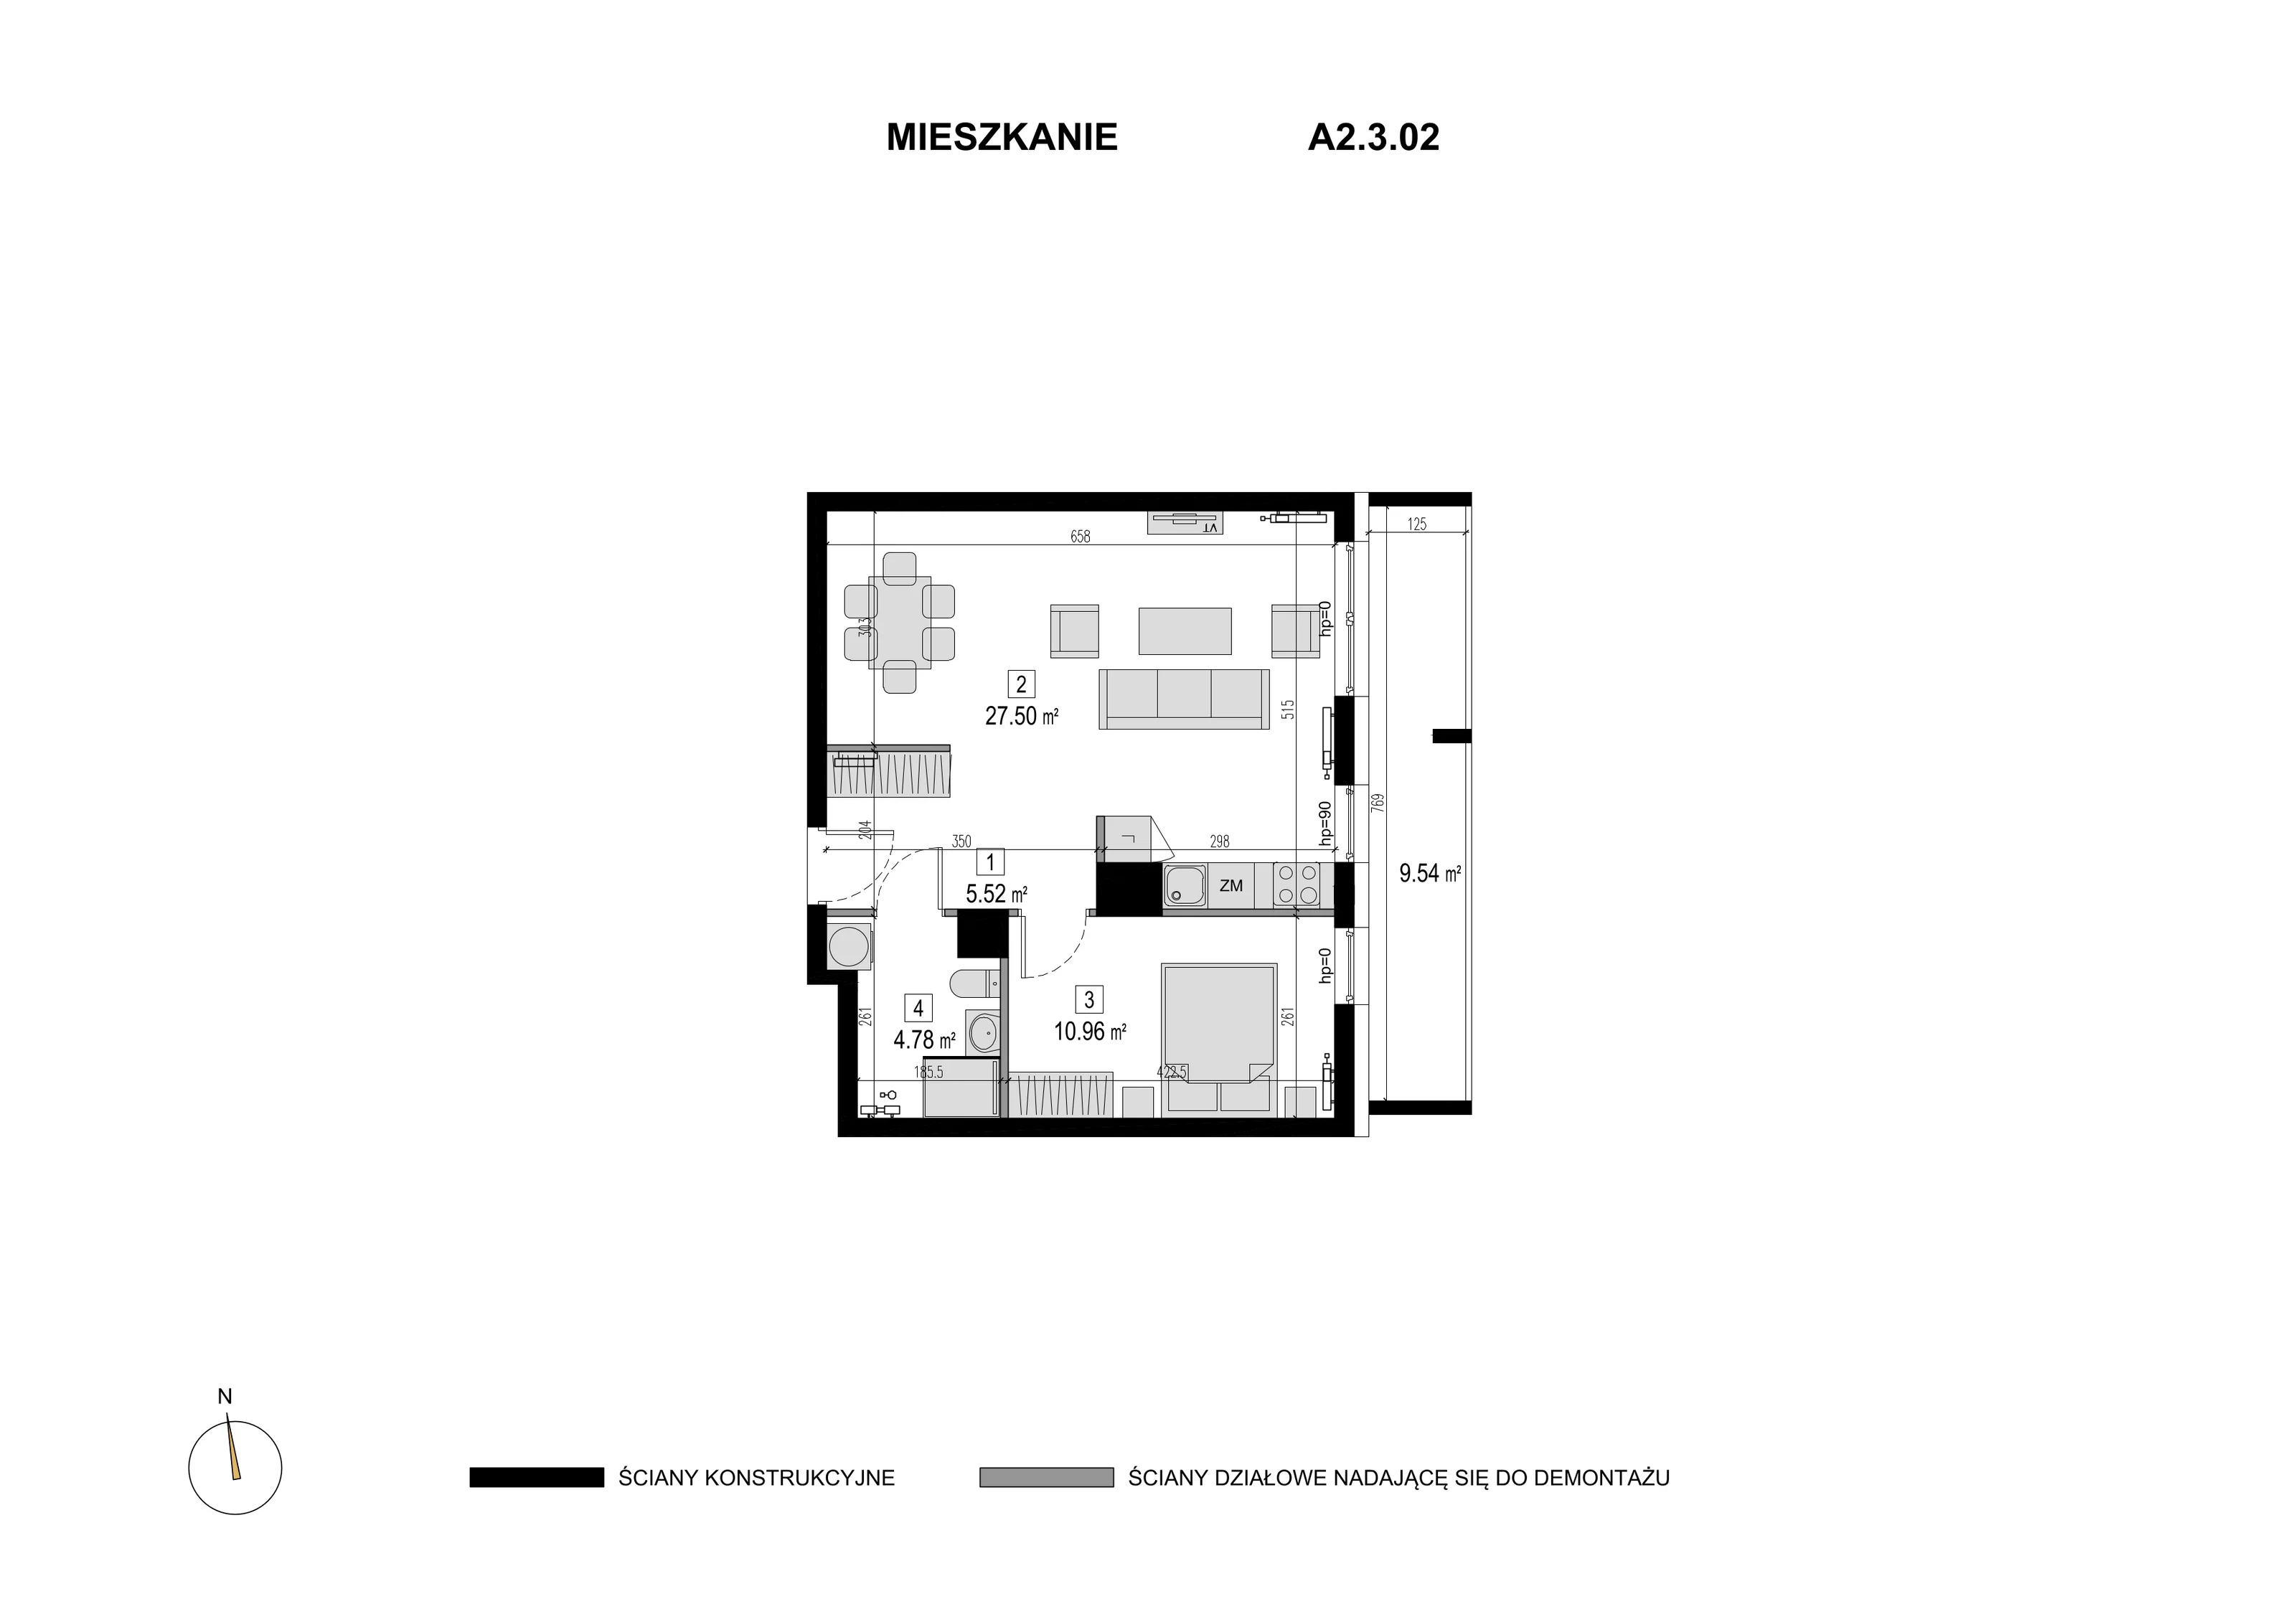 Mieszkanie 48,76 m², piętro 2, oferta nr A2.3.02, Novaforma, Legnica, ul. Chojnowska